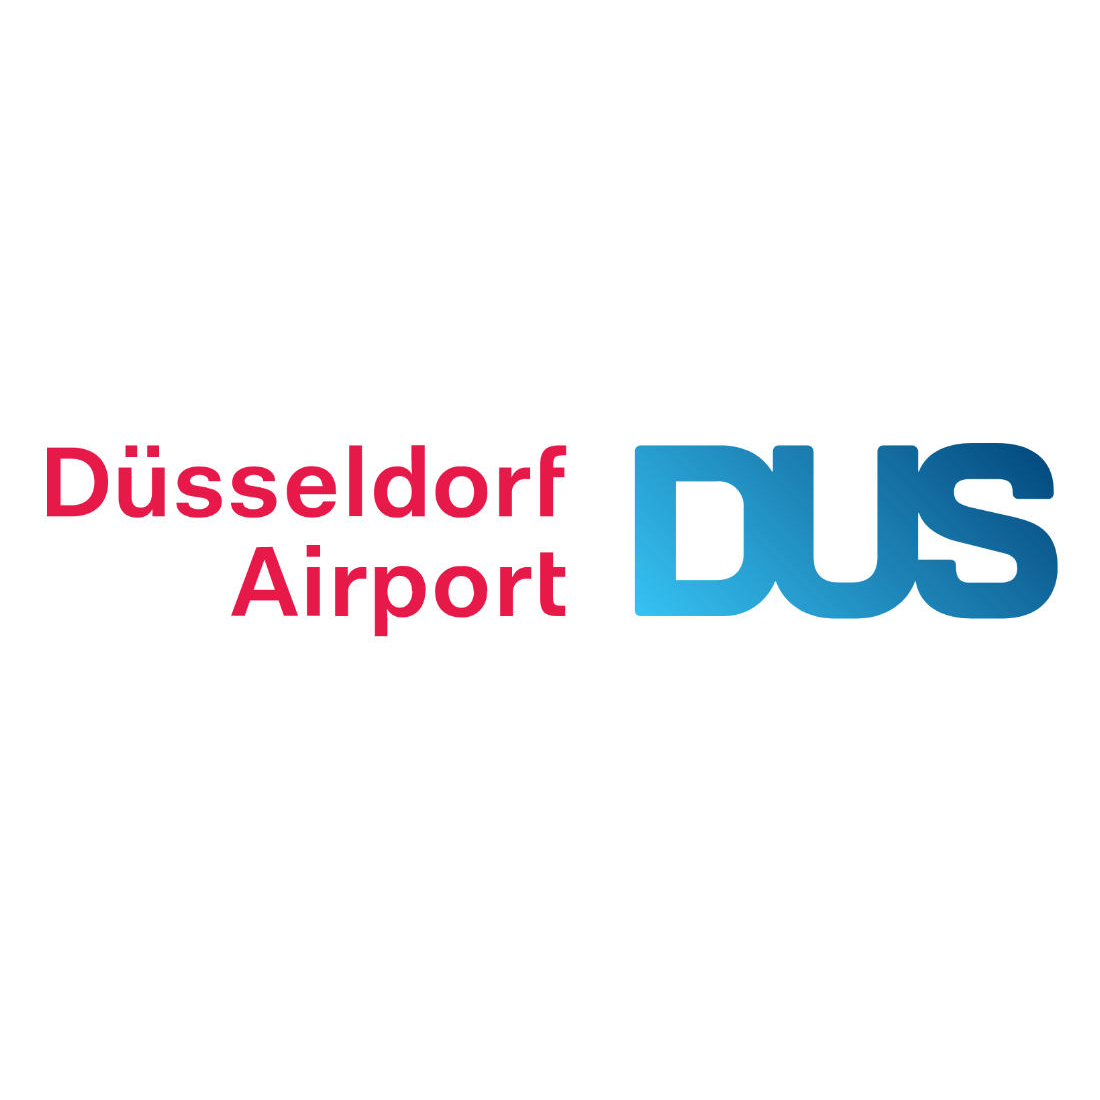 DUS Airport logo